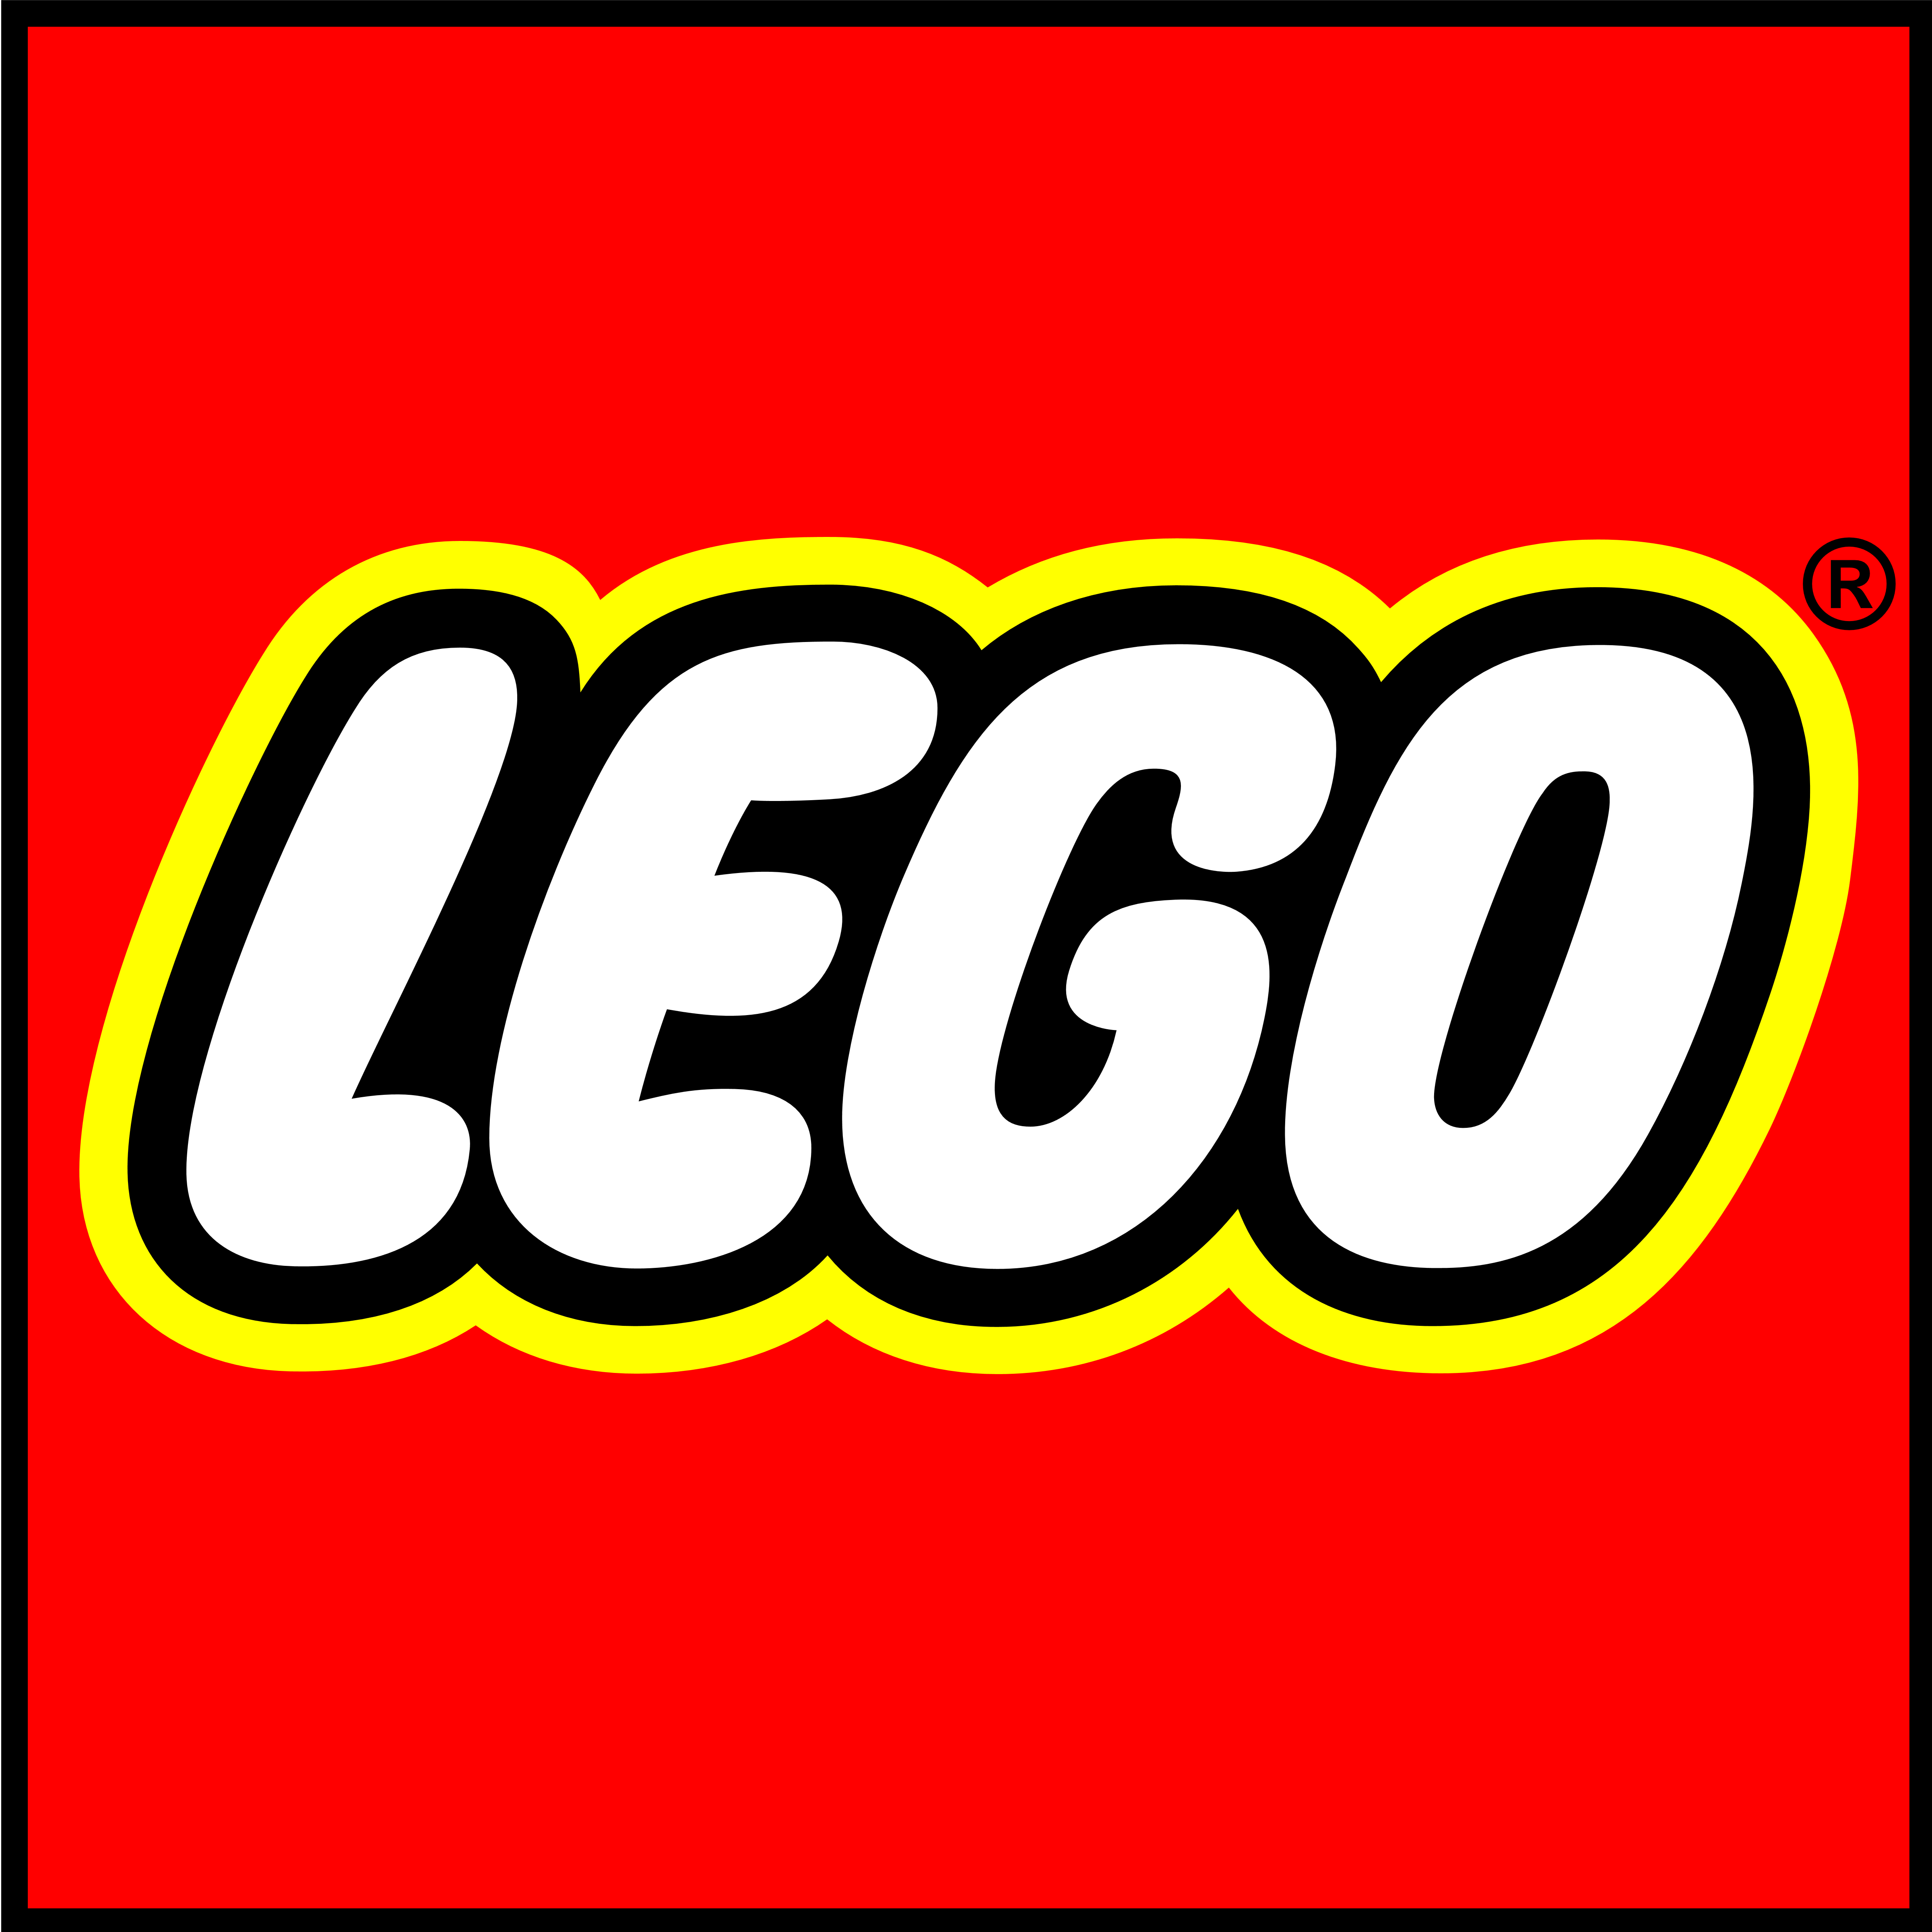 Lego – Logos Download